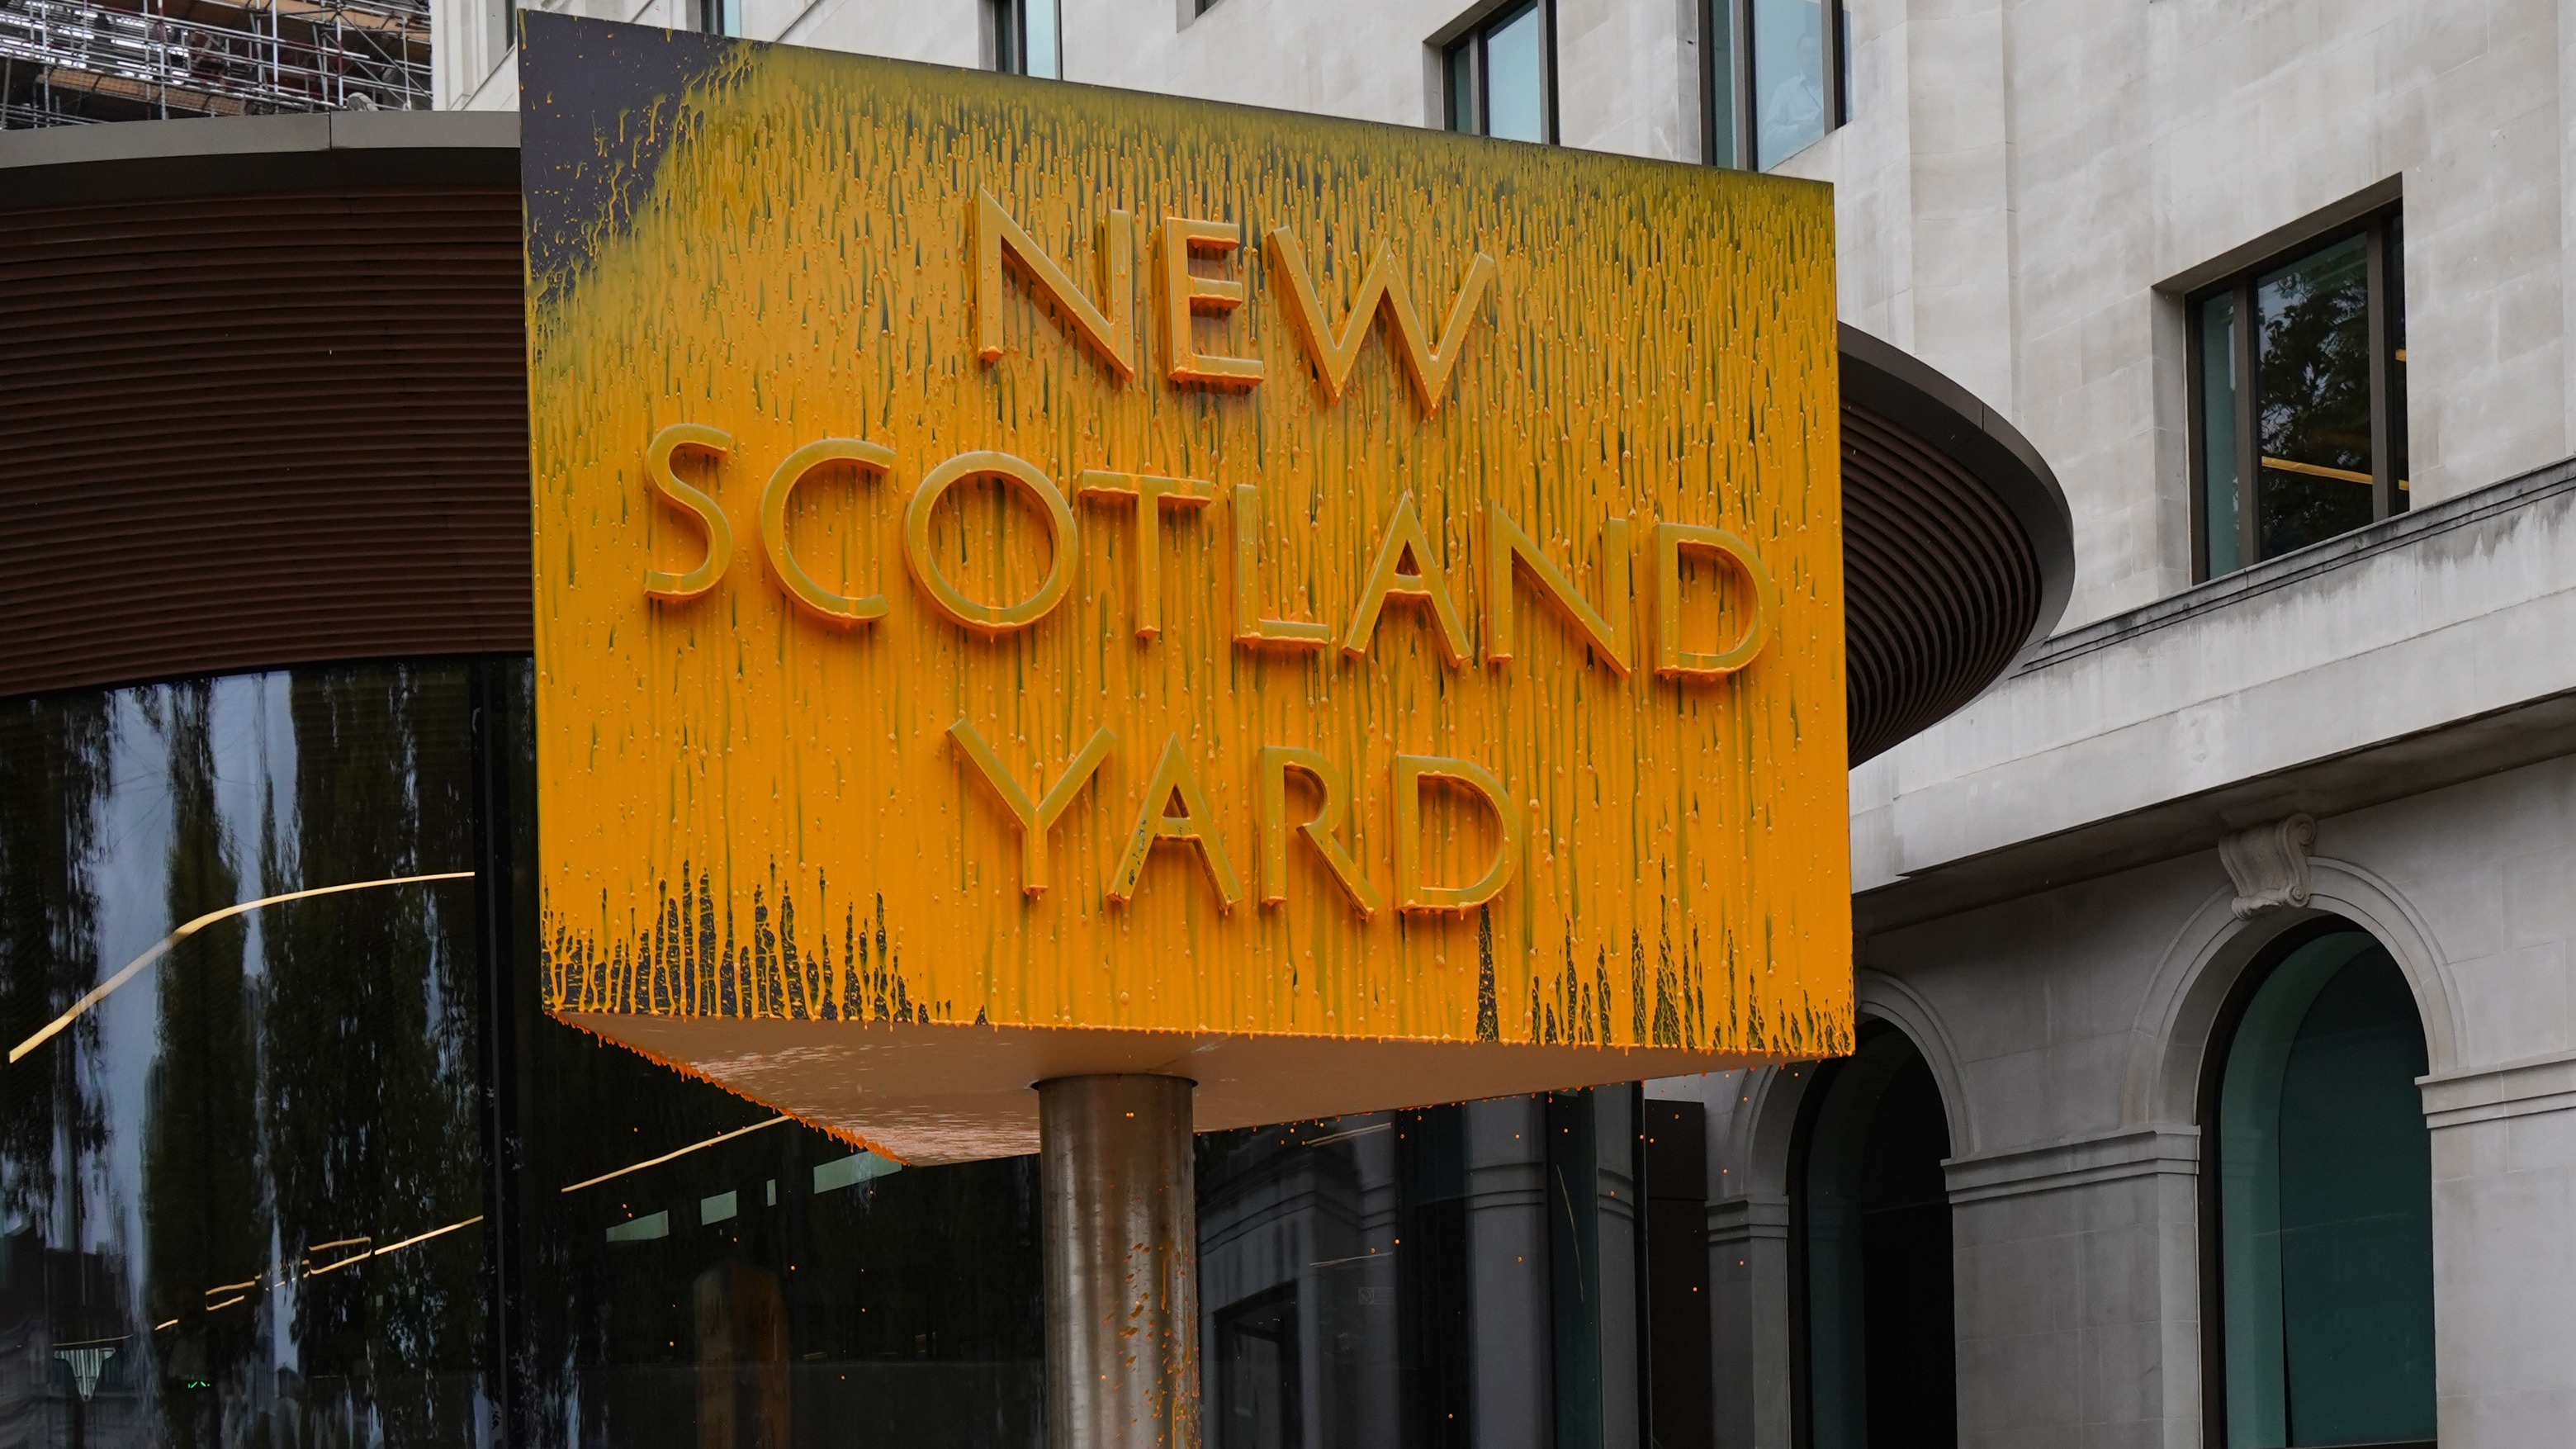 Scotland_Yard